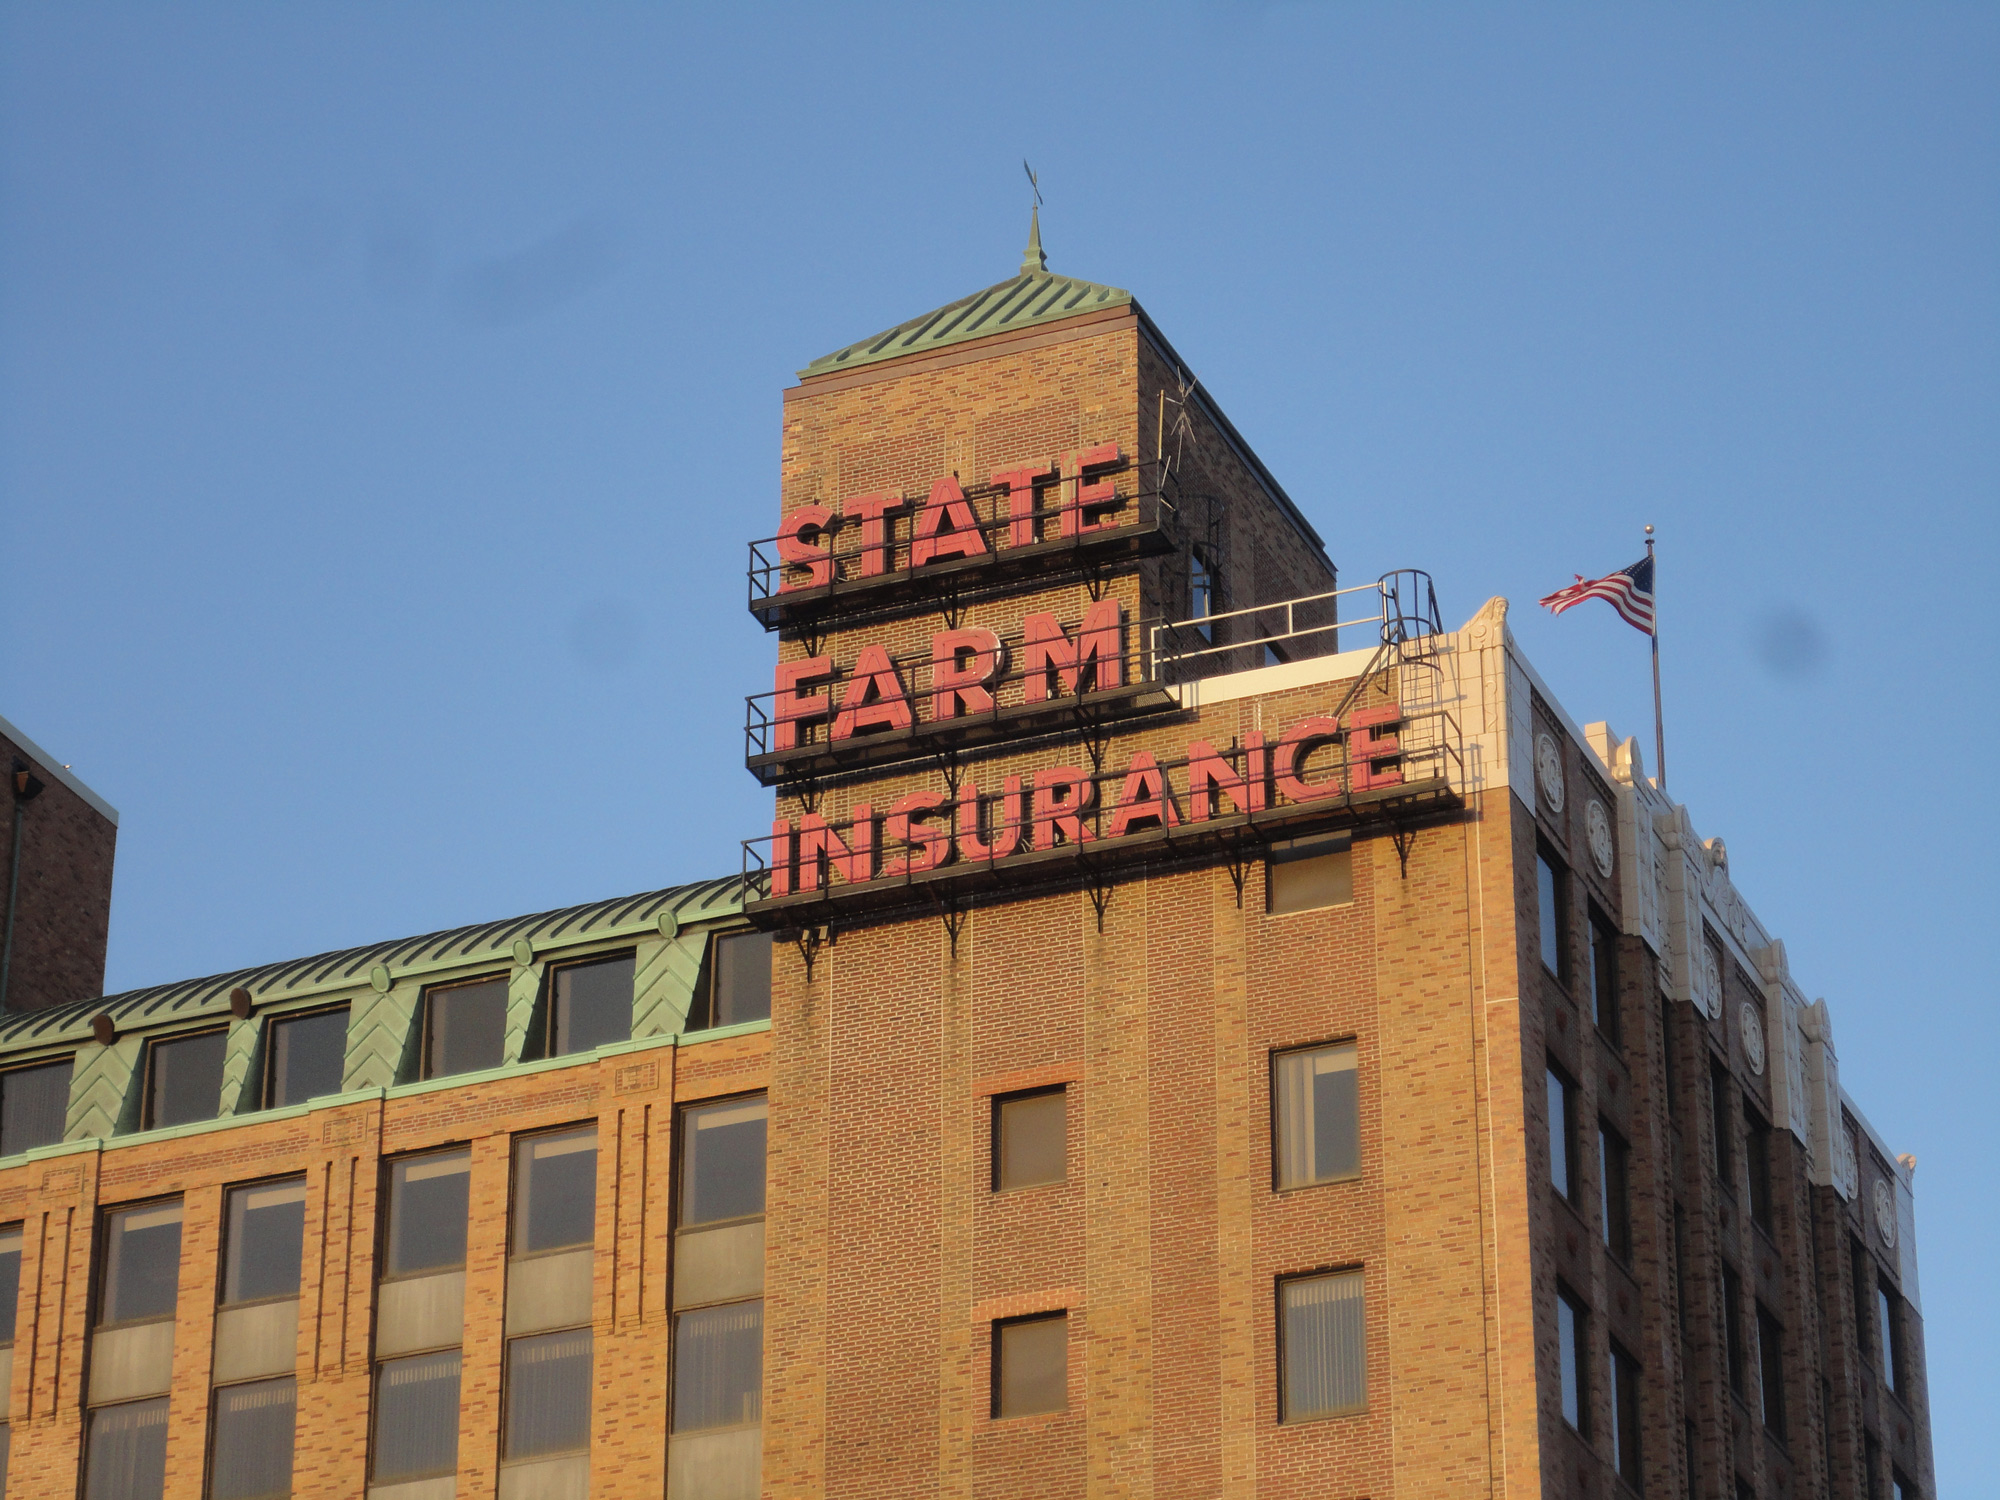 州立农业保险公司在一座棕色砖石建筑顶上戴着鲜红色的帽子。